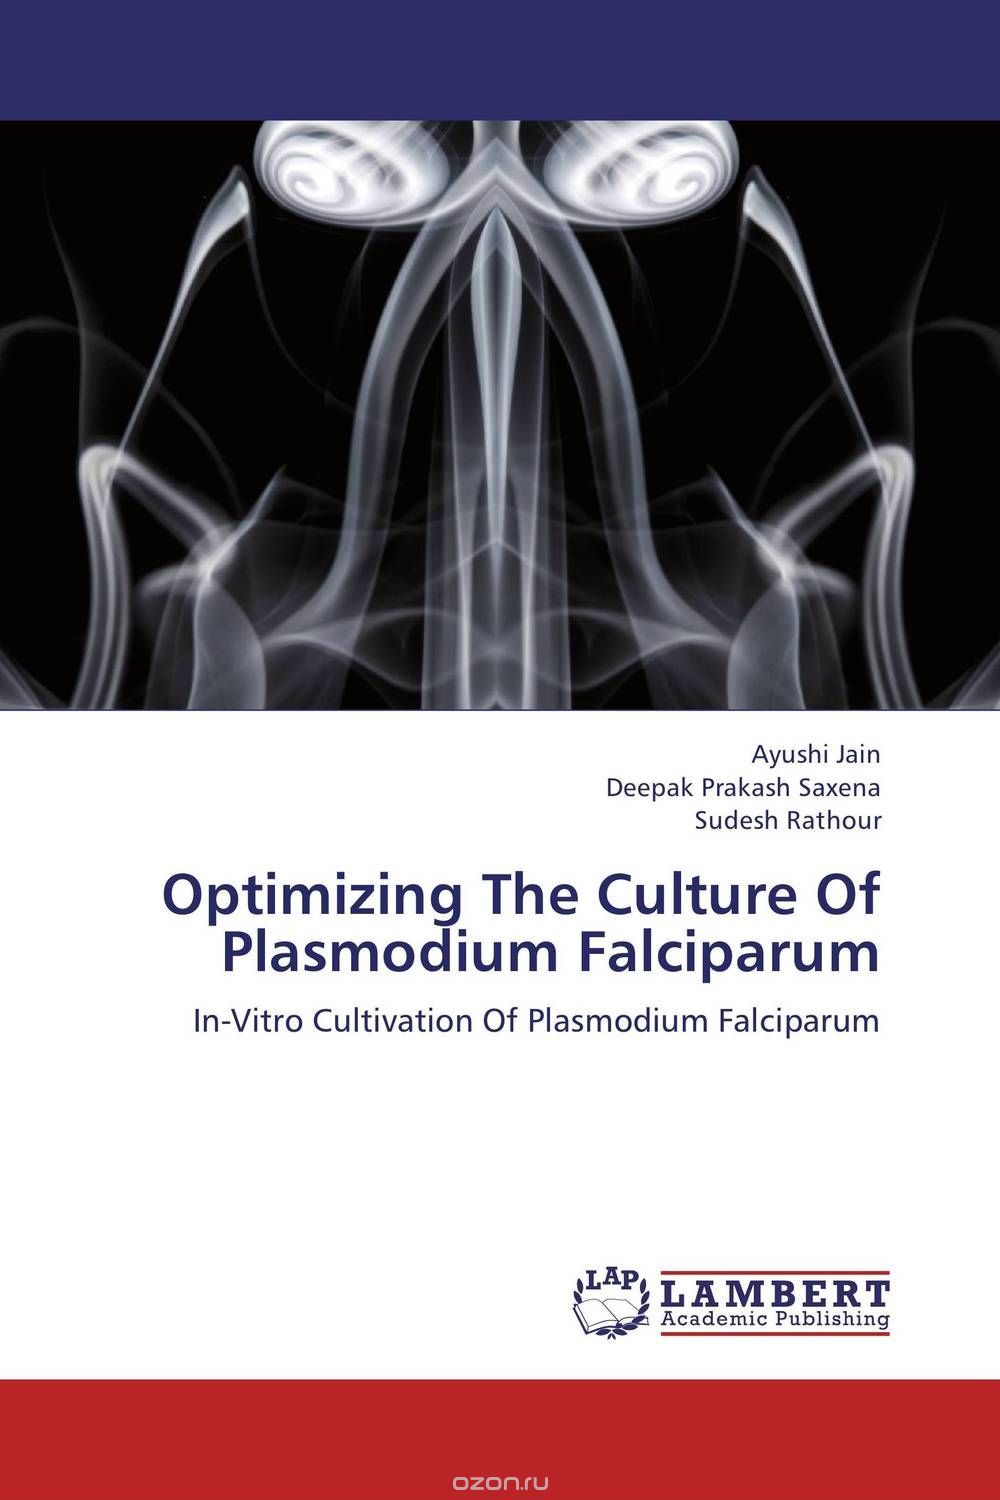 Скачать книгу "Optimizing The Culture Of Plasmodium Falciparum"